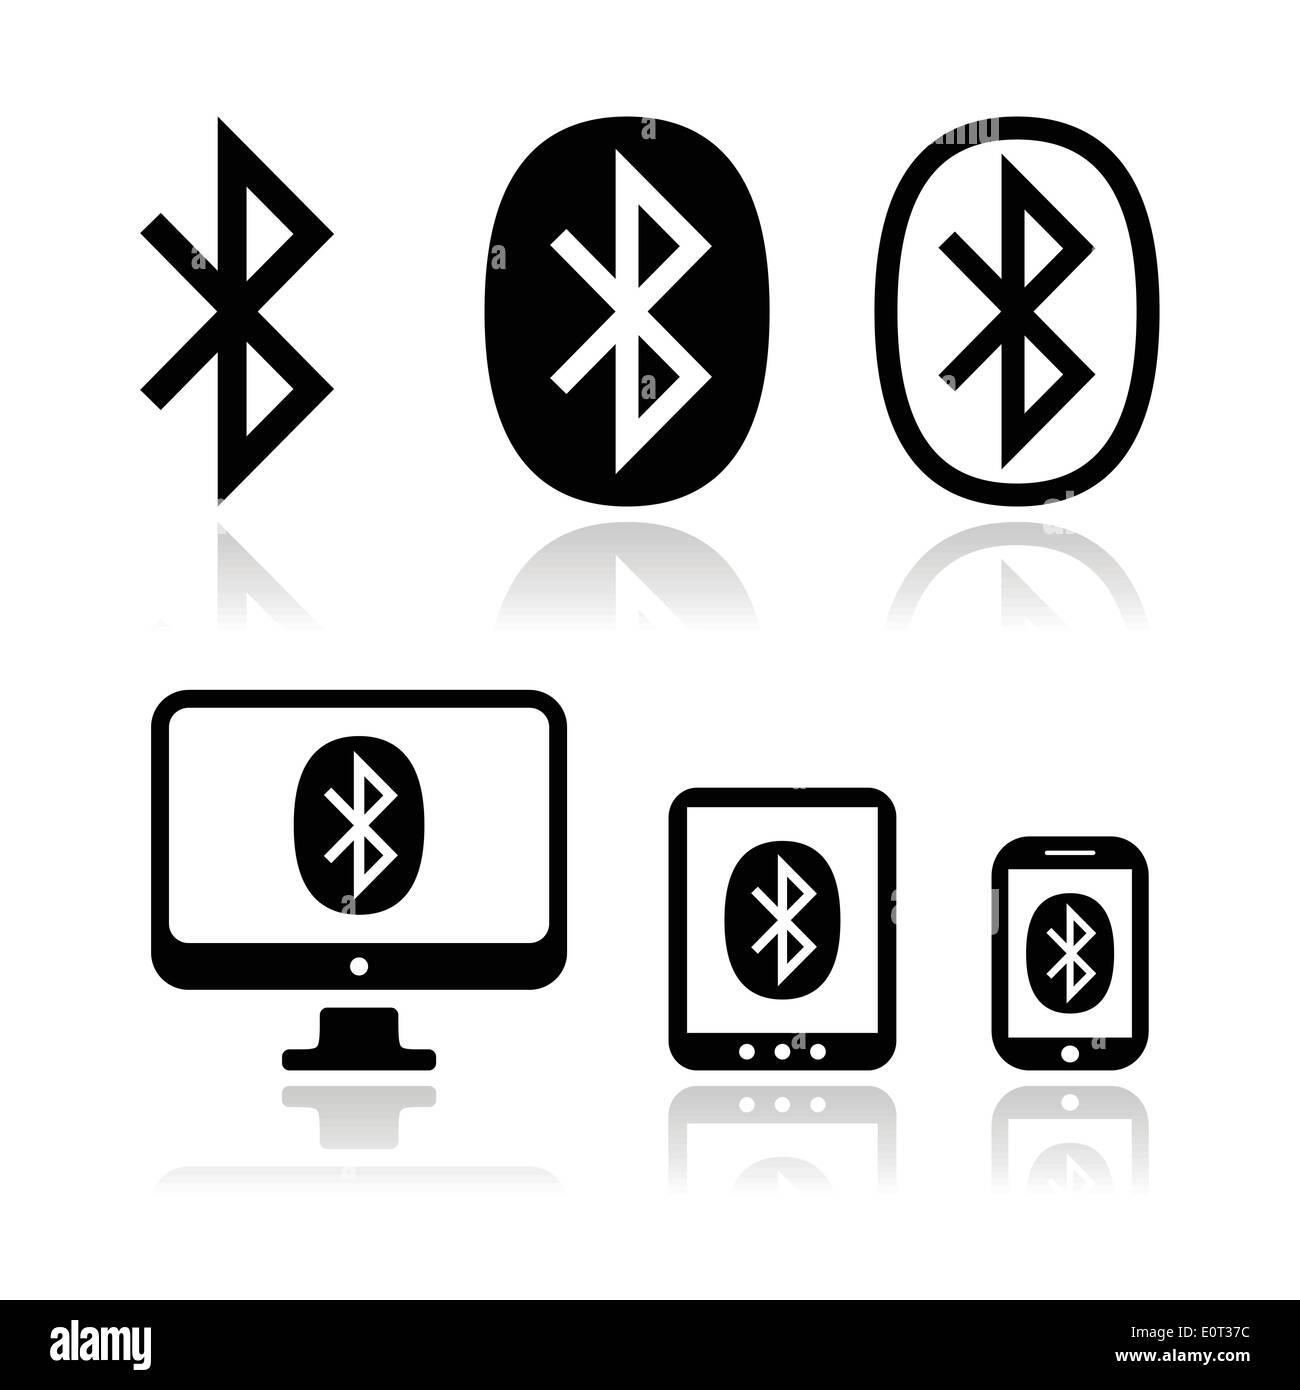 Connexion Bluetooth vector icons set Illustration de Vecteur